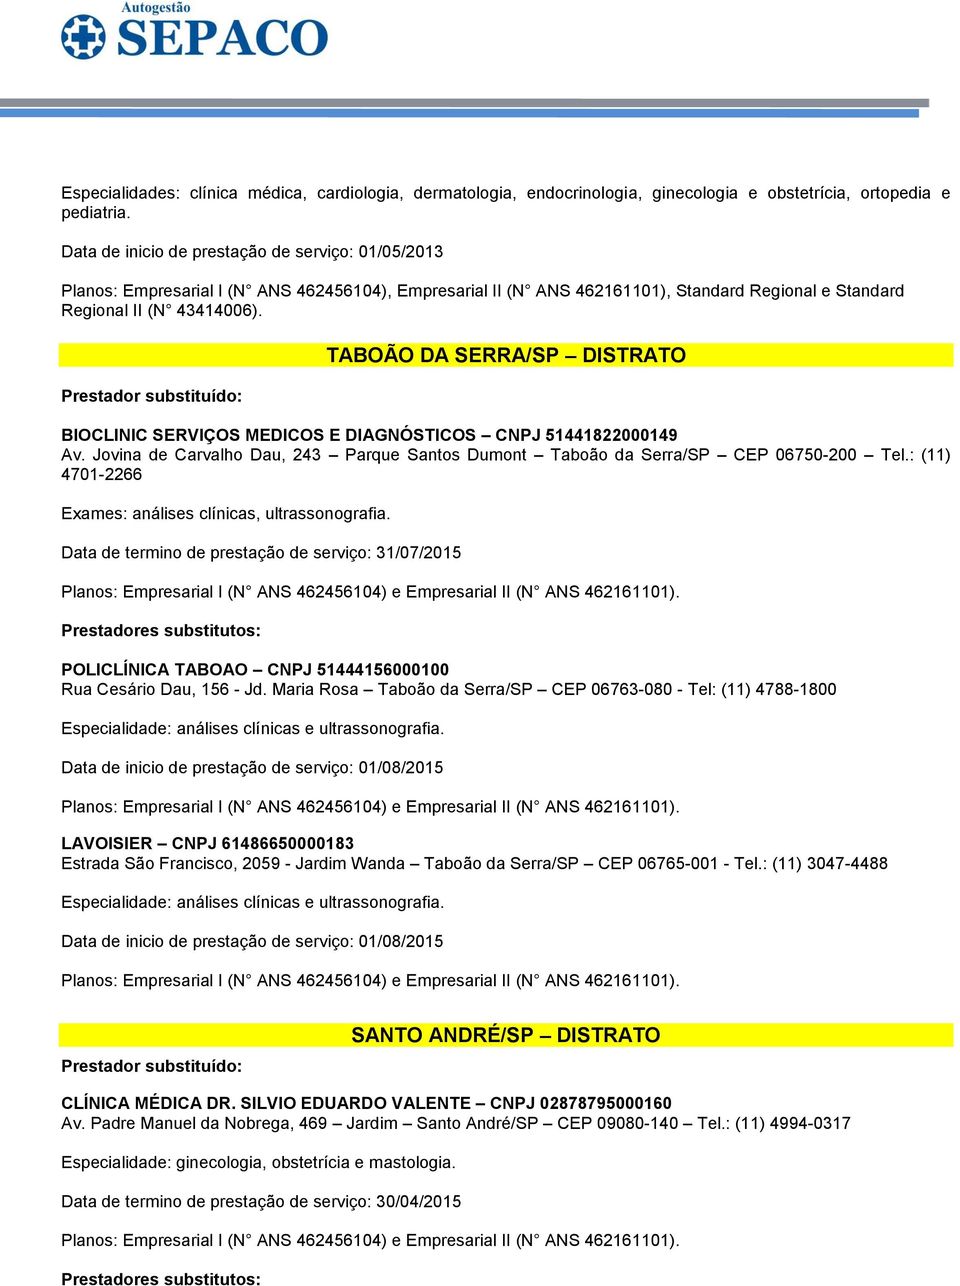 : (11) 4701-2266 Exames: análises clínicas, ultrassonografia. Data de termino de prestação de serviço: 31/07/2015 POLICLÍNICA TABOAO CNPJ 51444156000100 Rua Cesário Dau, 156 - Jd.